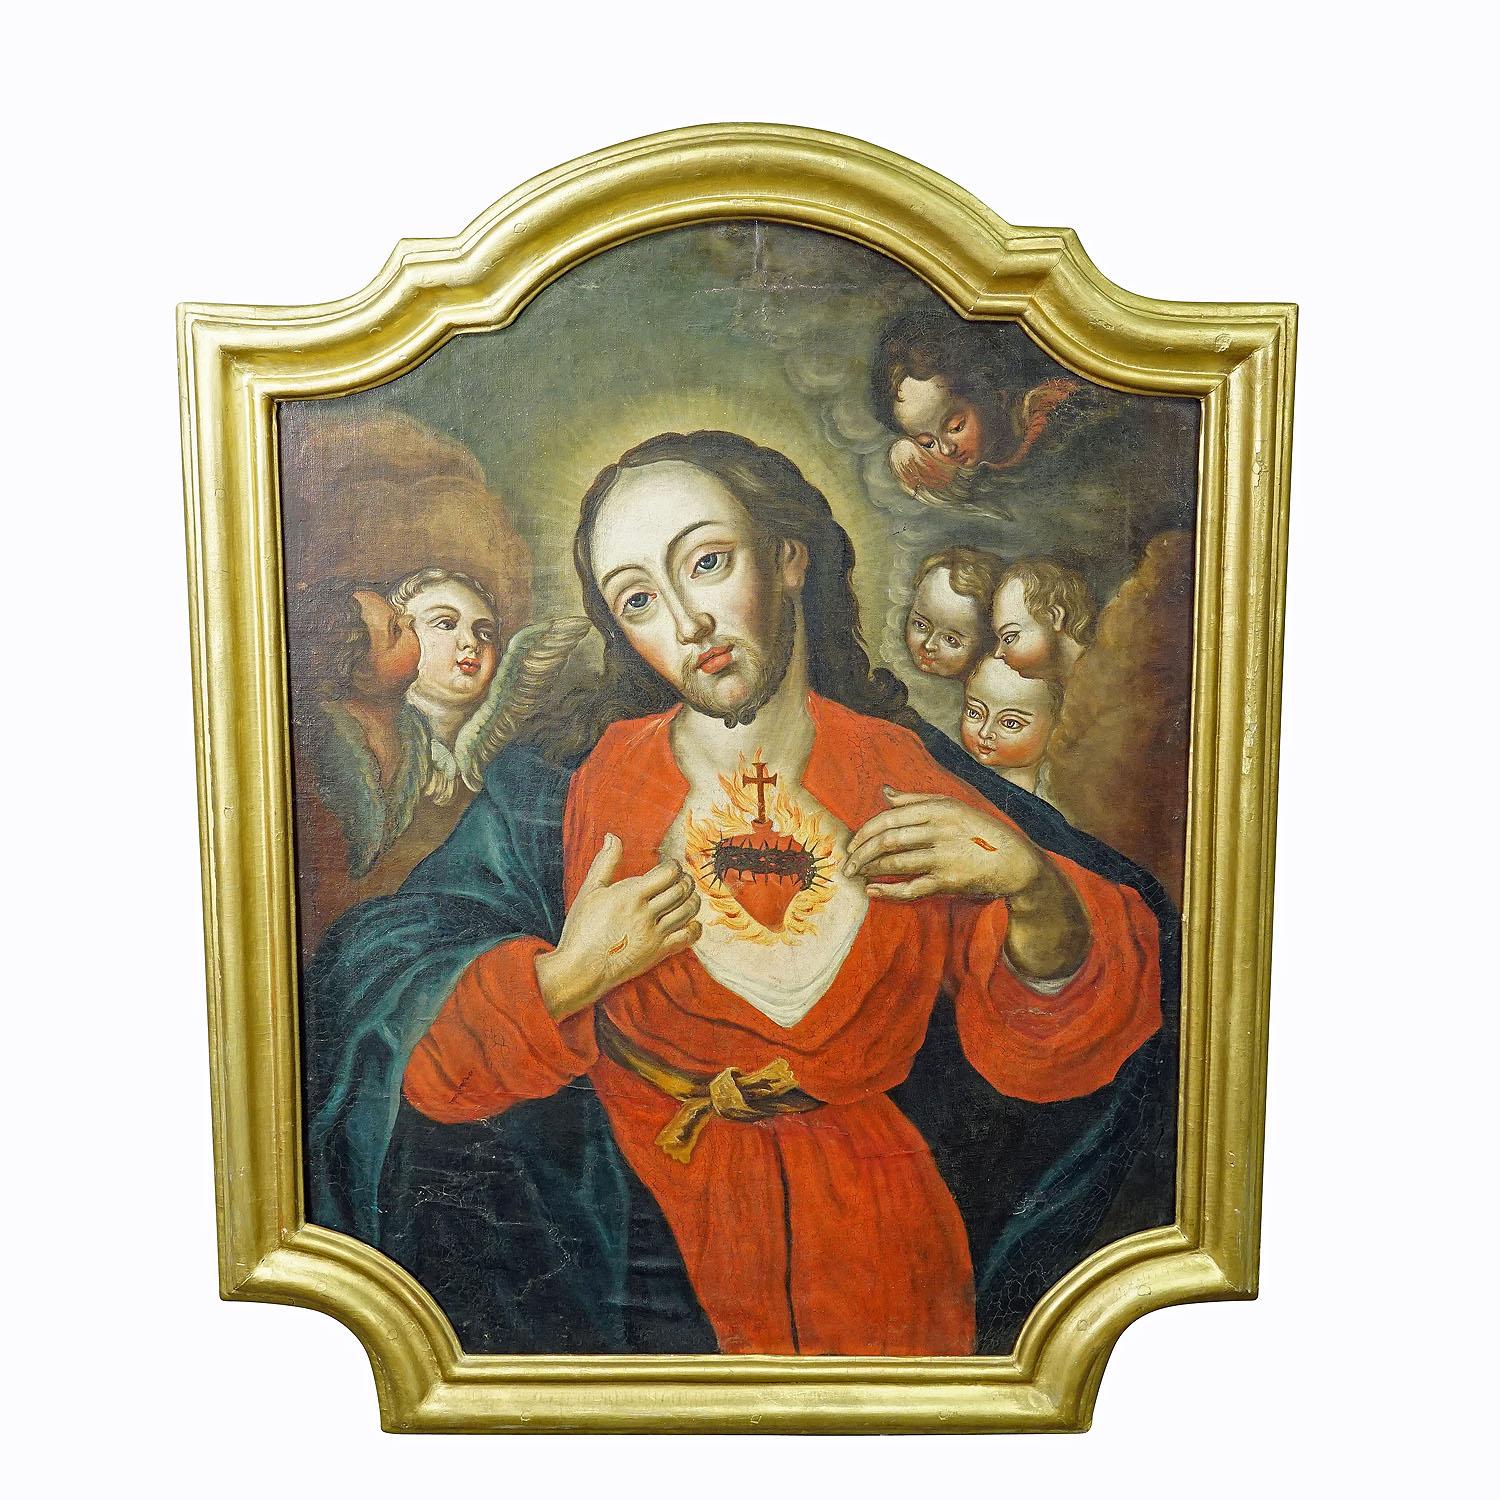 Das Heilige Herz Jesu, Ölgemälde auf Leinwand 18. Jahrhundert

Ein antikes Ölgemälde, das das heilige Herz Jesu darstellt. Öl auf Leinwand mit Pastellfarben. Die Symbolik der Darstellung besteht darin, dass das durchbohrte Herz des Gekreuzigten die